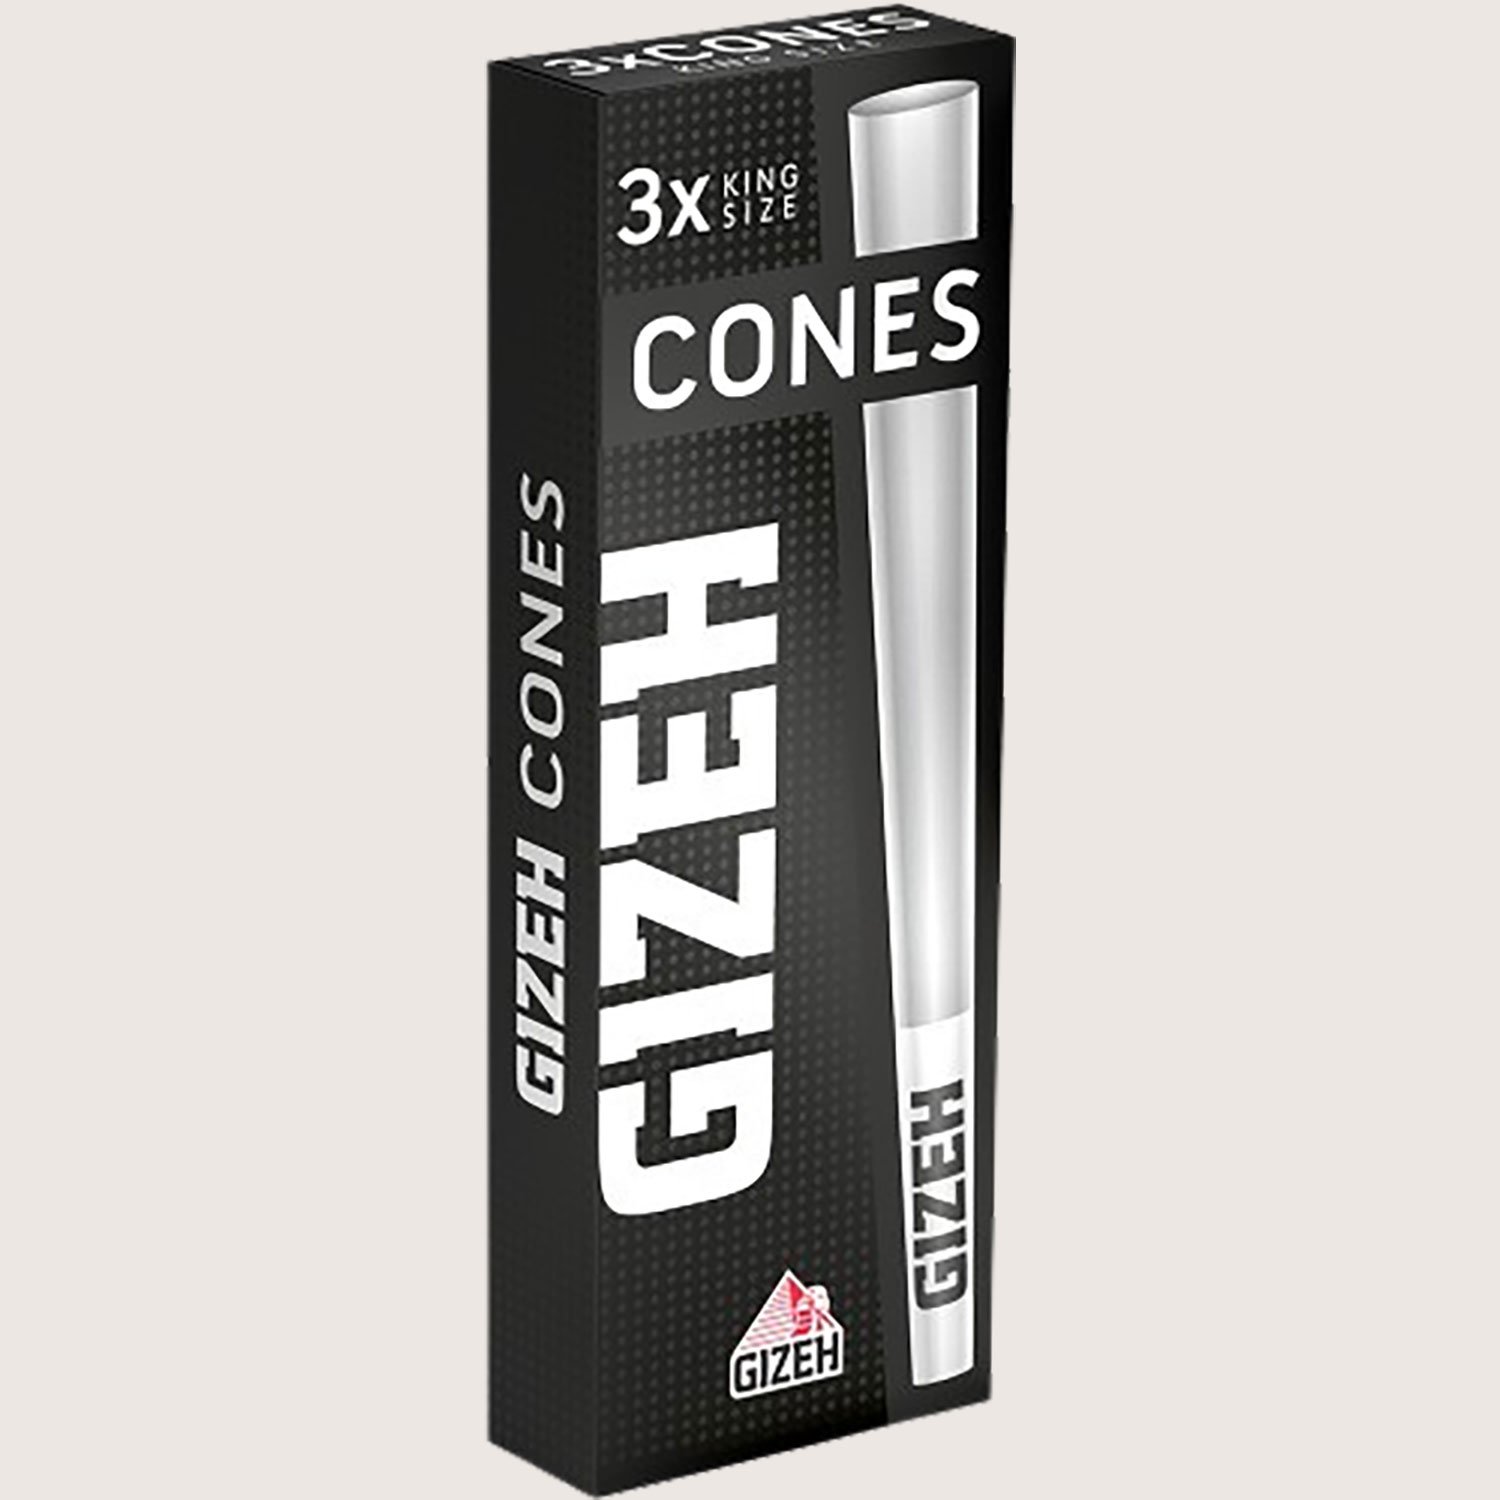 Gizeh Black Cones + Tip 3 Cones